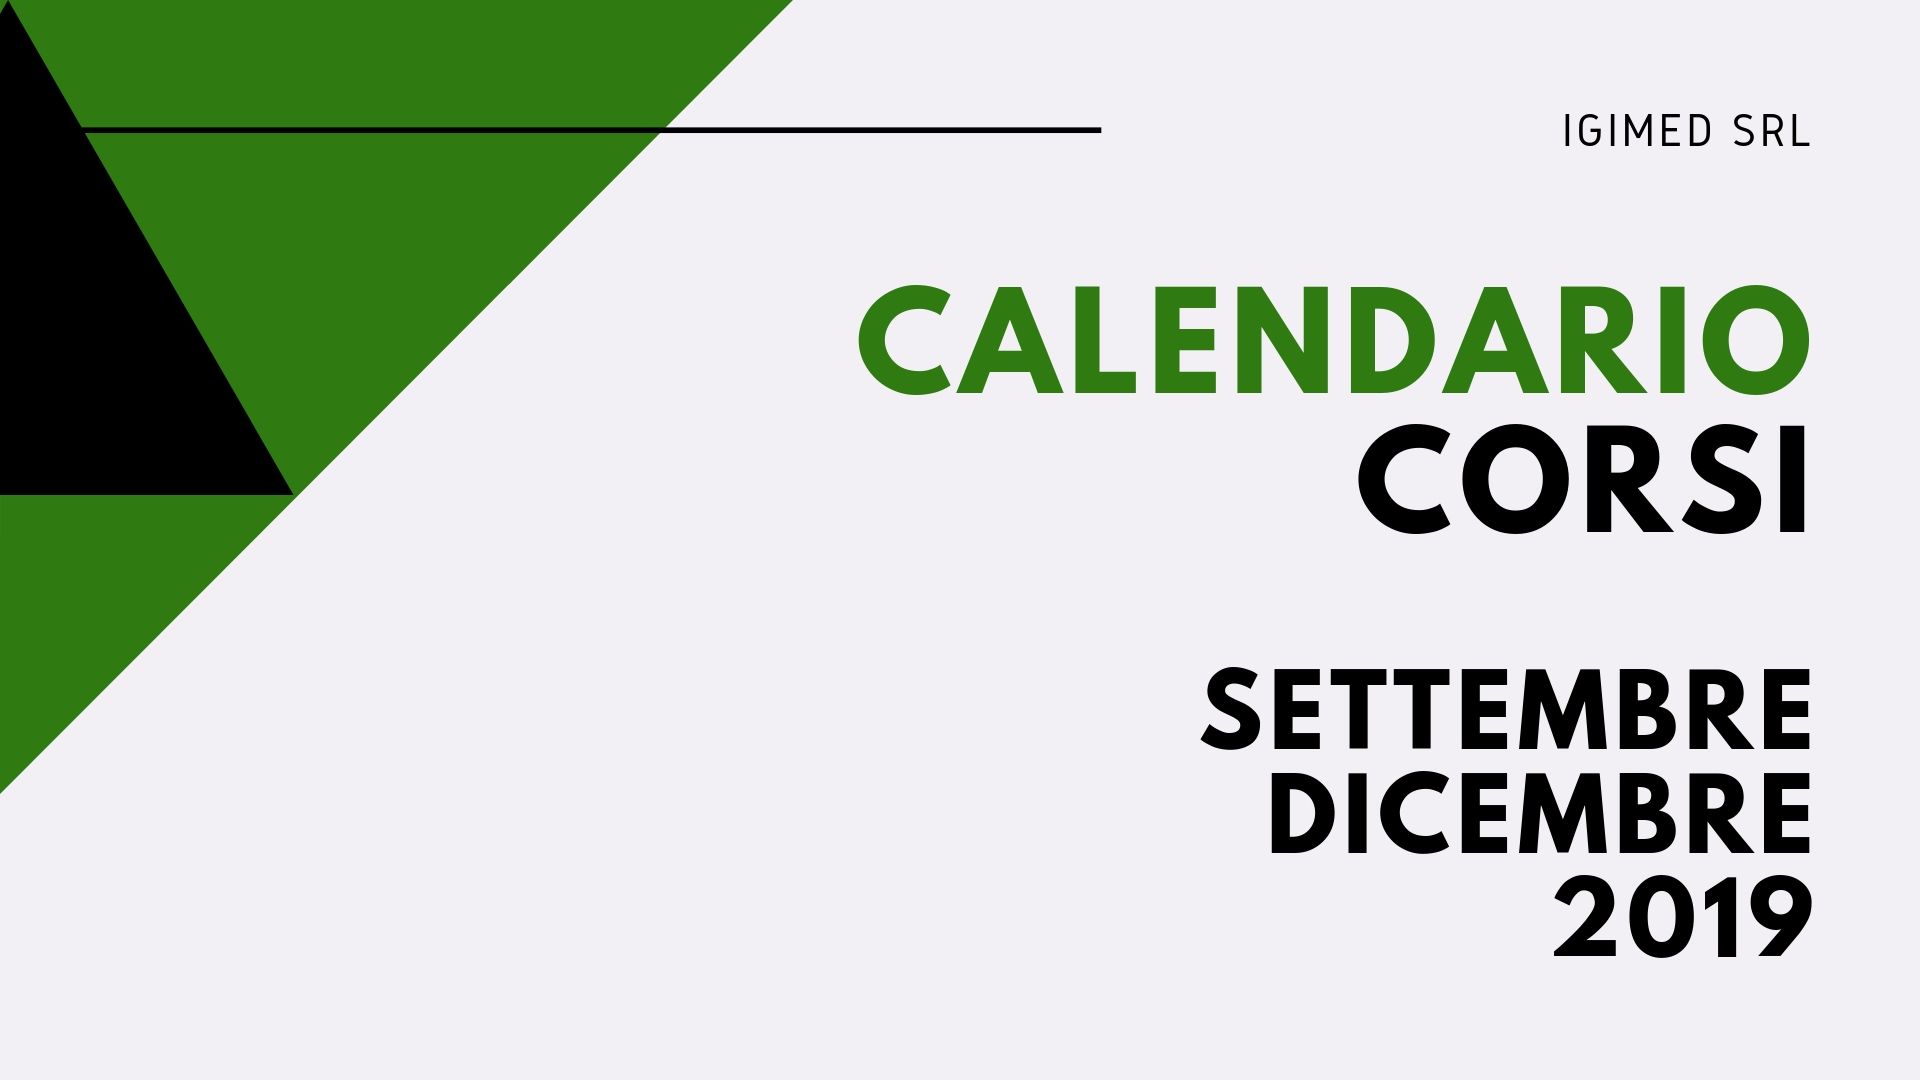 IGIMED Srl | Calendario corsi Settembre-Dicembre 2019